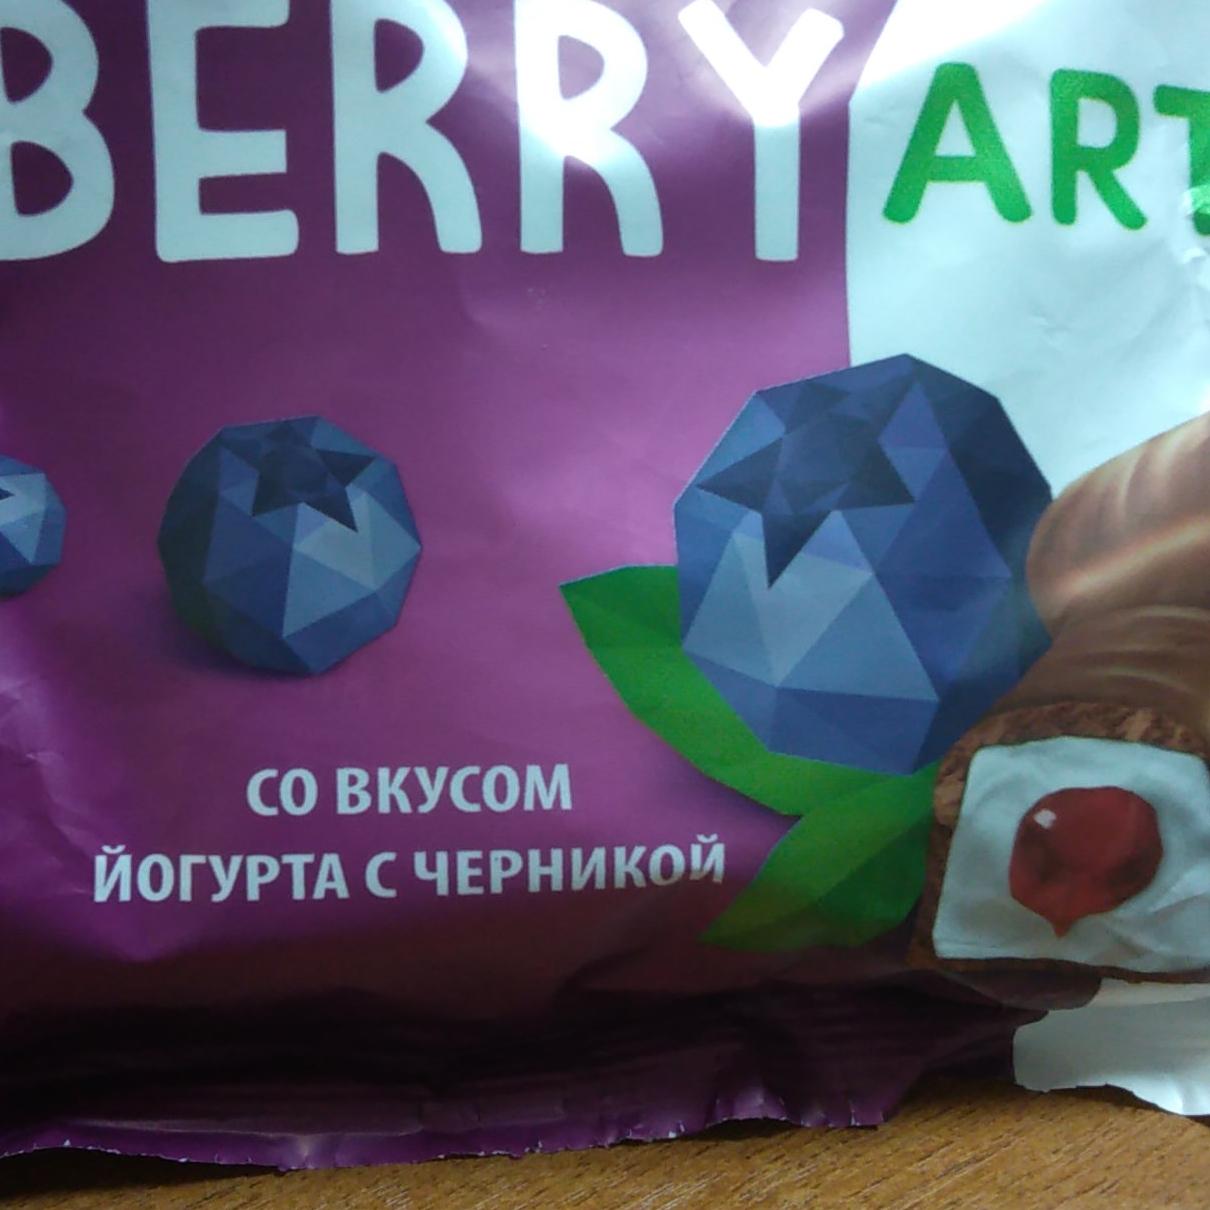 Фото - конфеты желейные со вкусом йогурта с черникой BerryArt